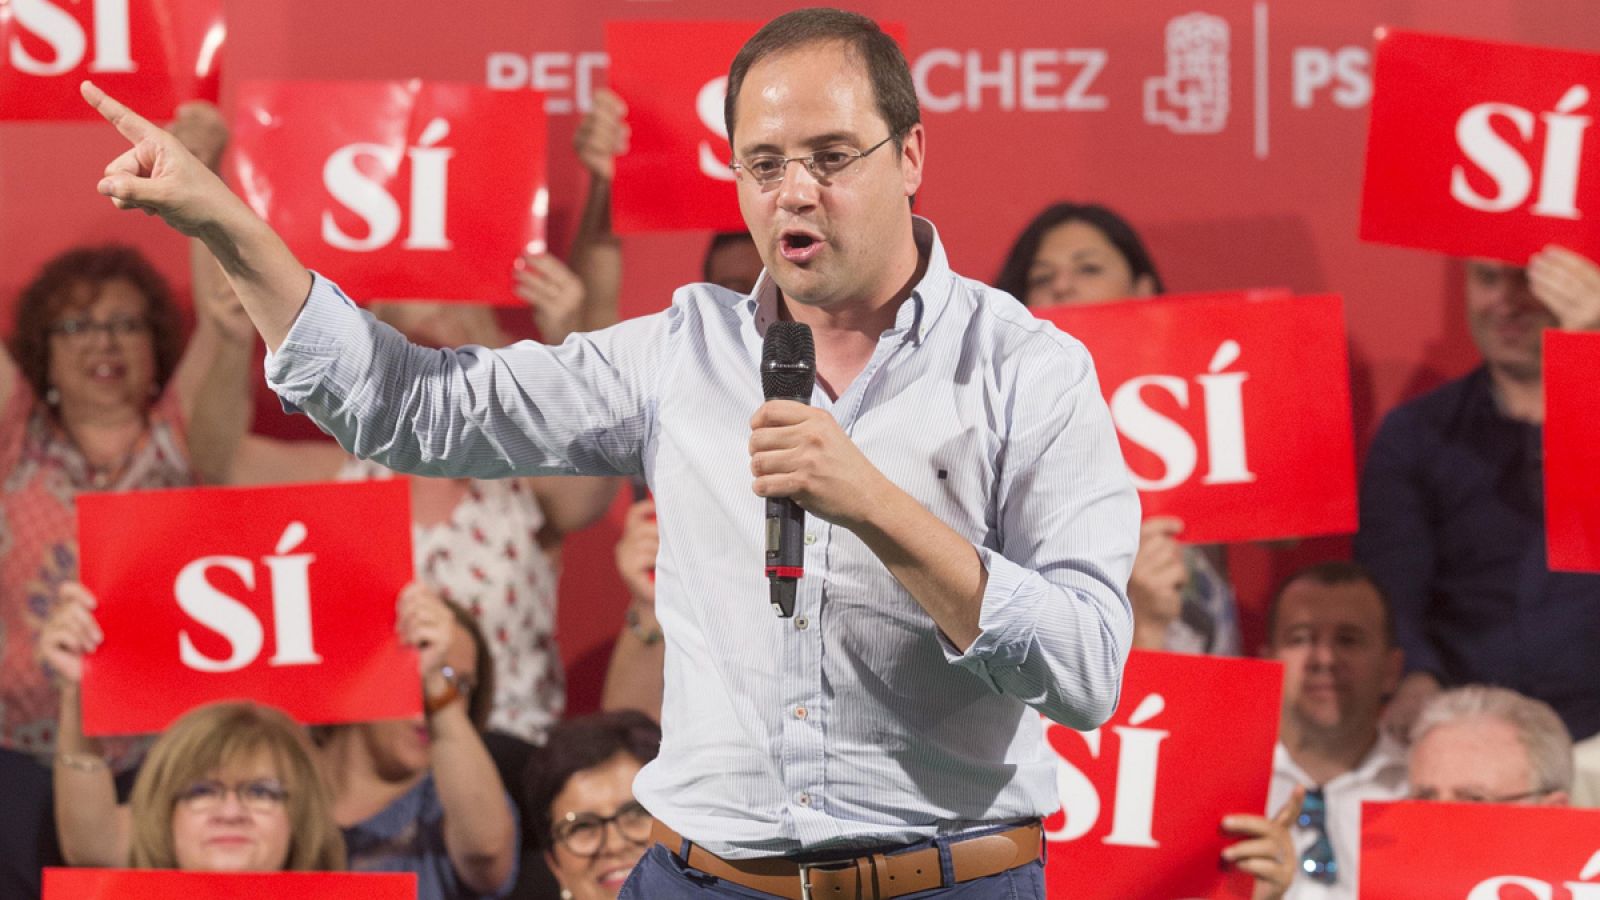 El secretario de organización del PSOE, César Luena, durante un acto del partido en Mula, Murcia.